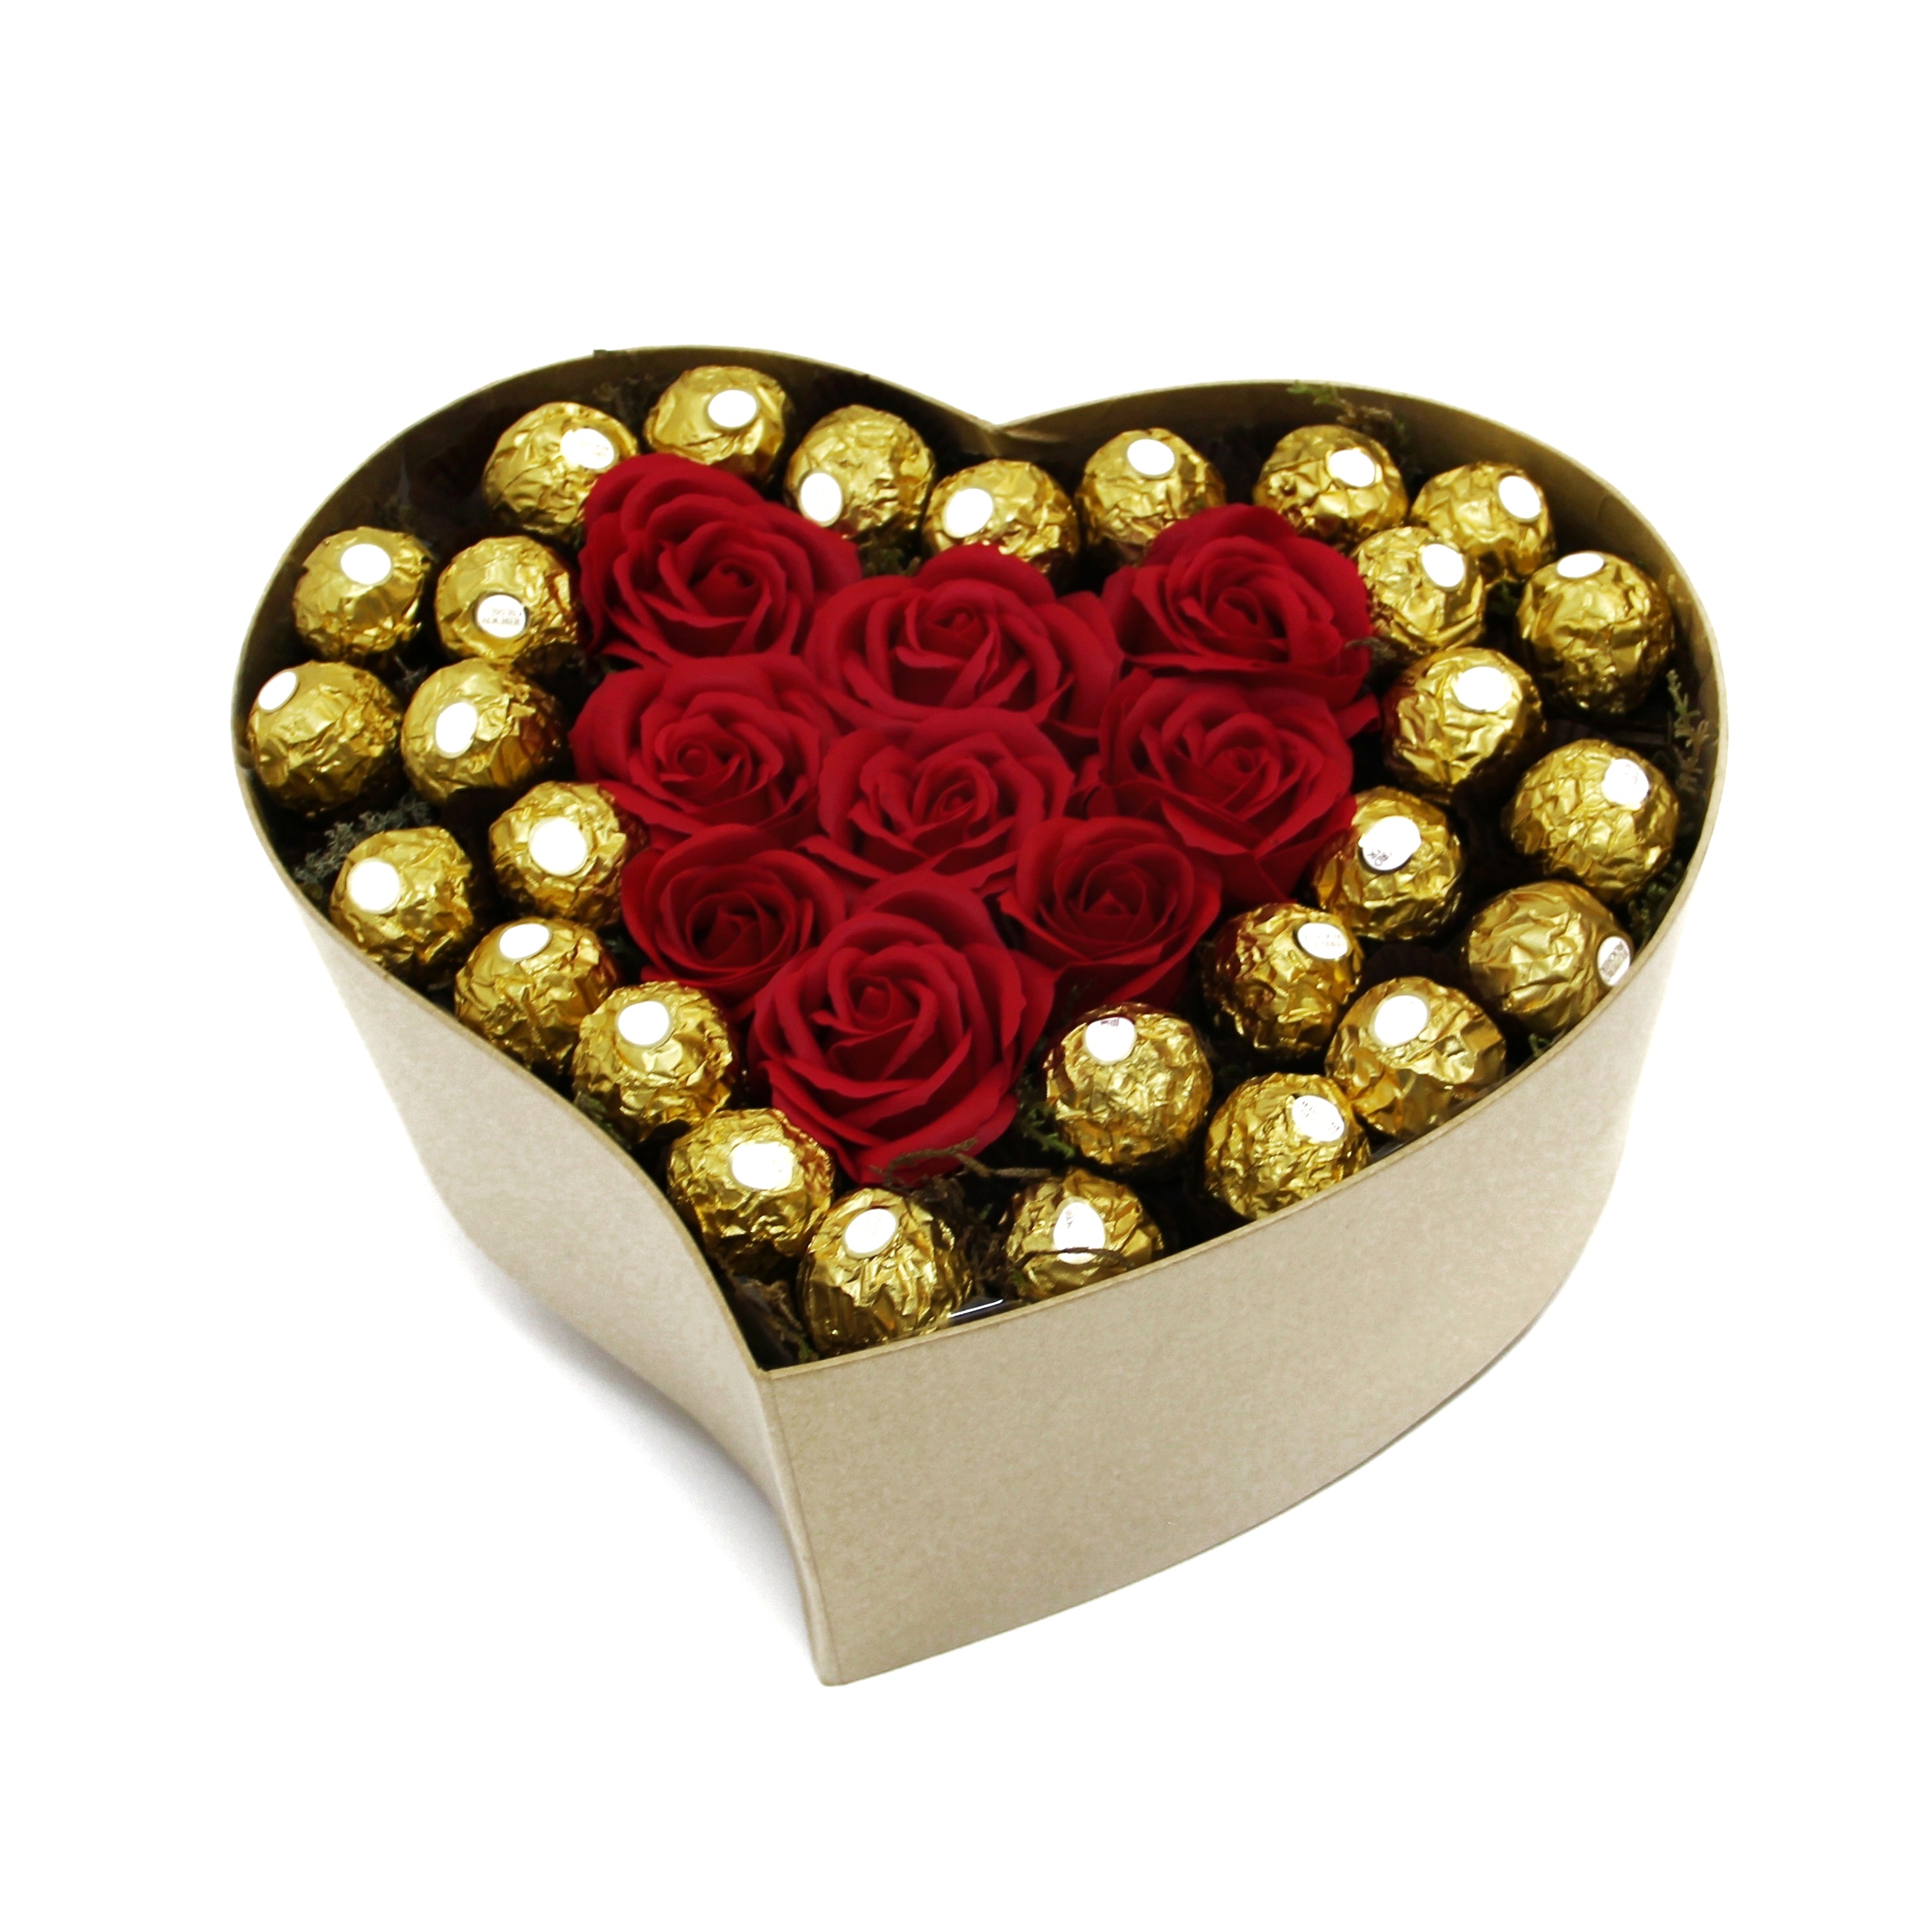 Caixa de Rosas com Chocolates Ferrero